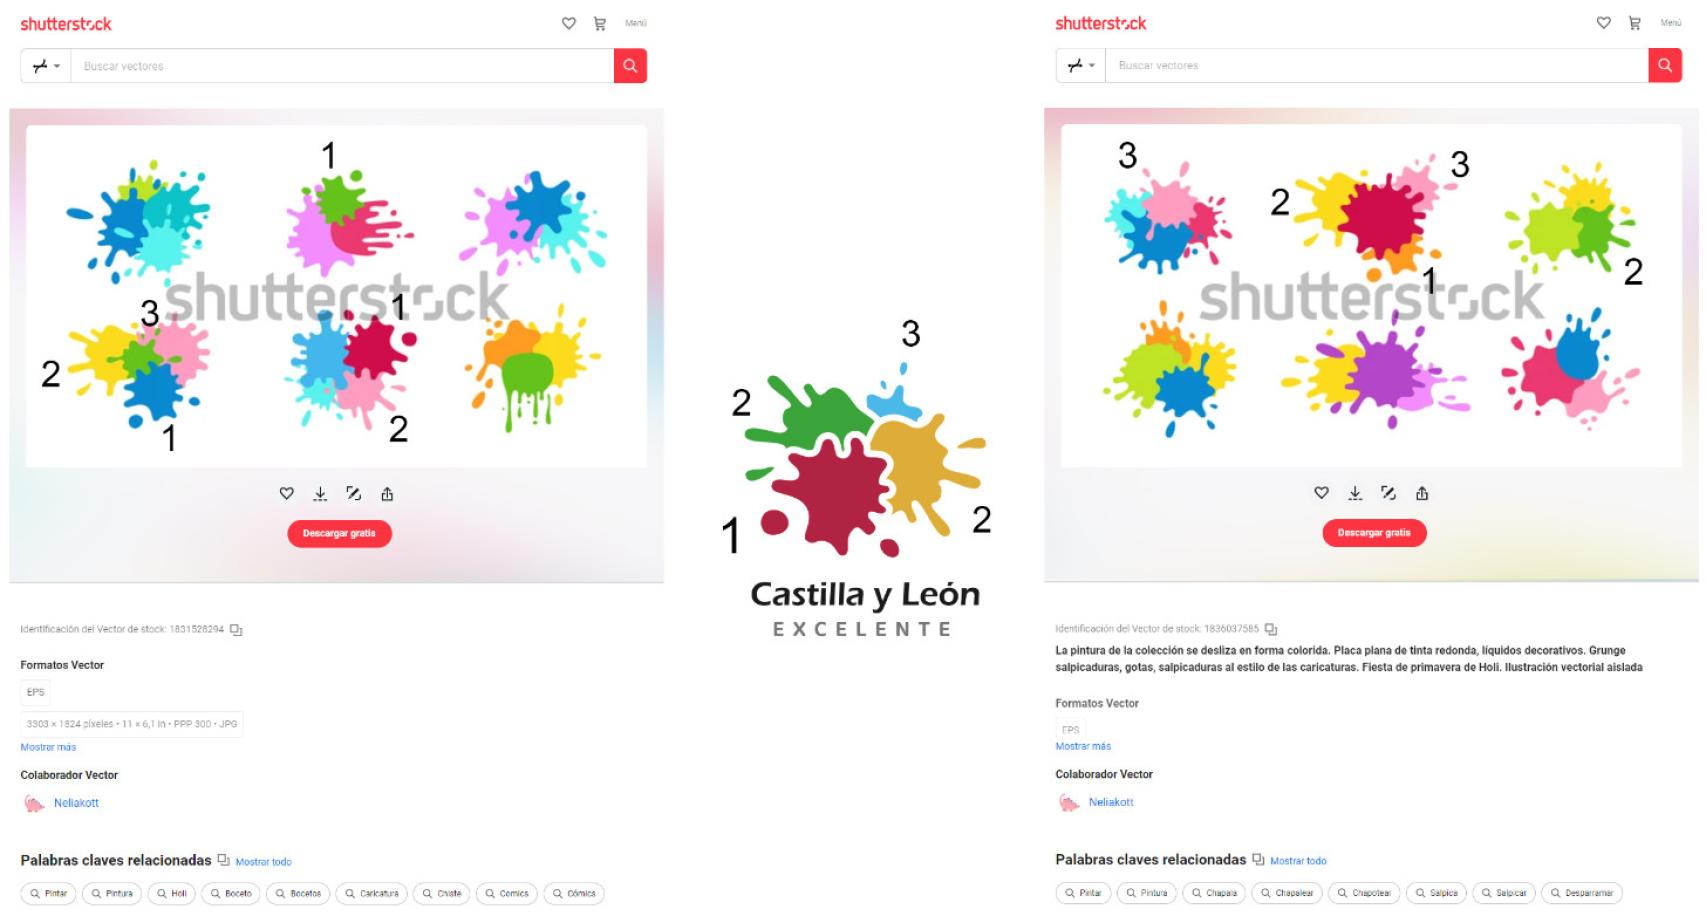 Comparación entre los diseños de Shutterstock y la nueva marca turística de Castilla y León